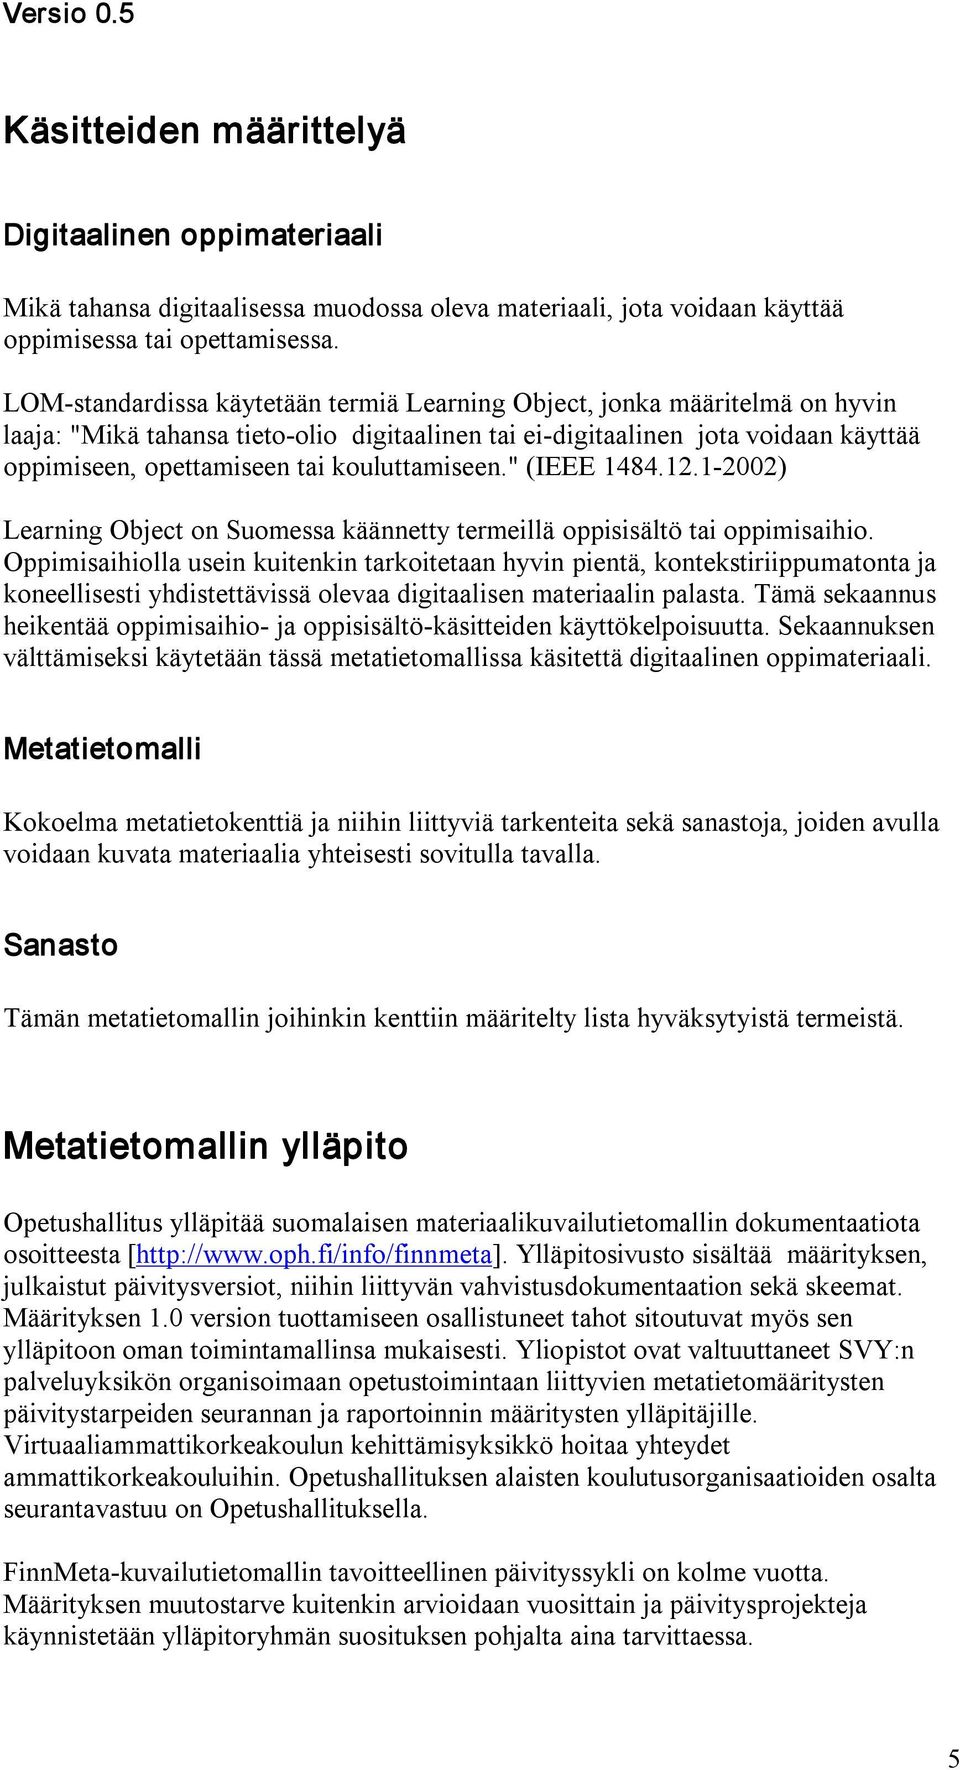 kouluttamiseen." (IEEE 1484.12.1 2002) Learning Object on Suomessa käännetty termeillä oppisisältö tai oppimisaihio.